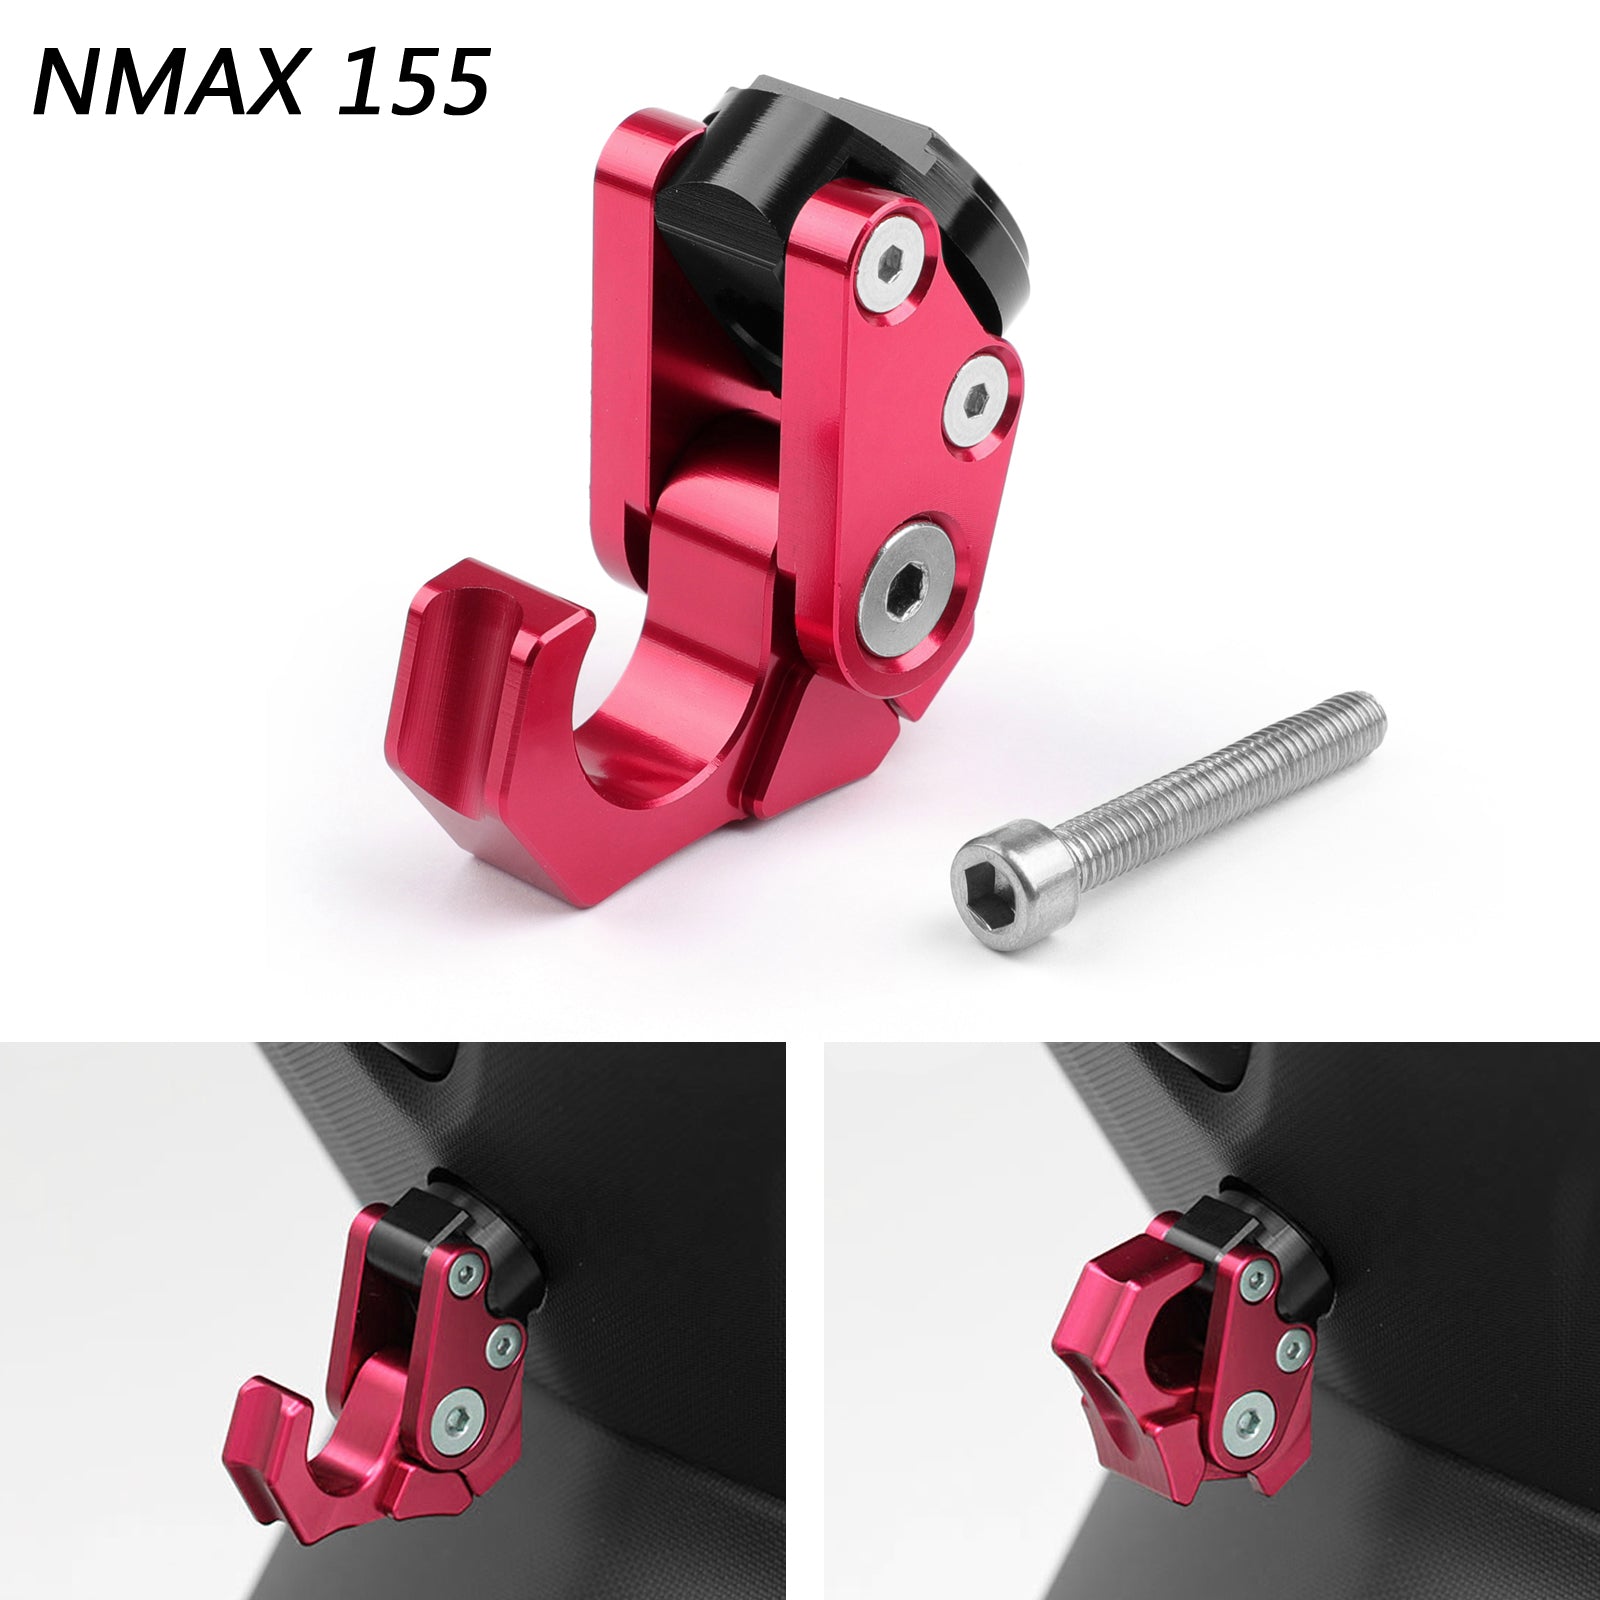 Portabotellas para casco, ganchos de transporte, aleación de aluminio CNC para Yamaha NMAX 155 genérico